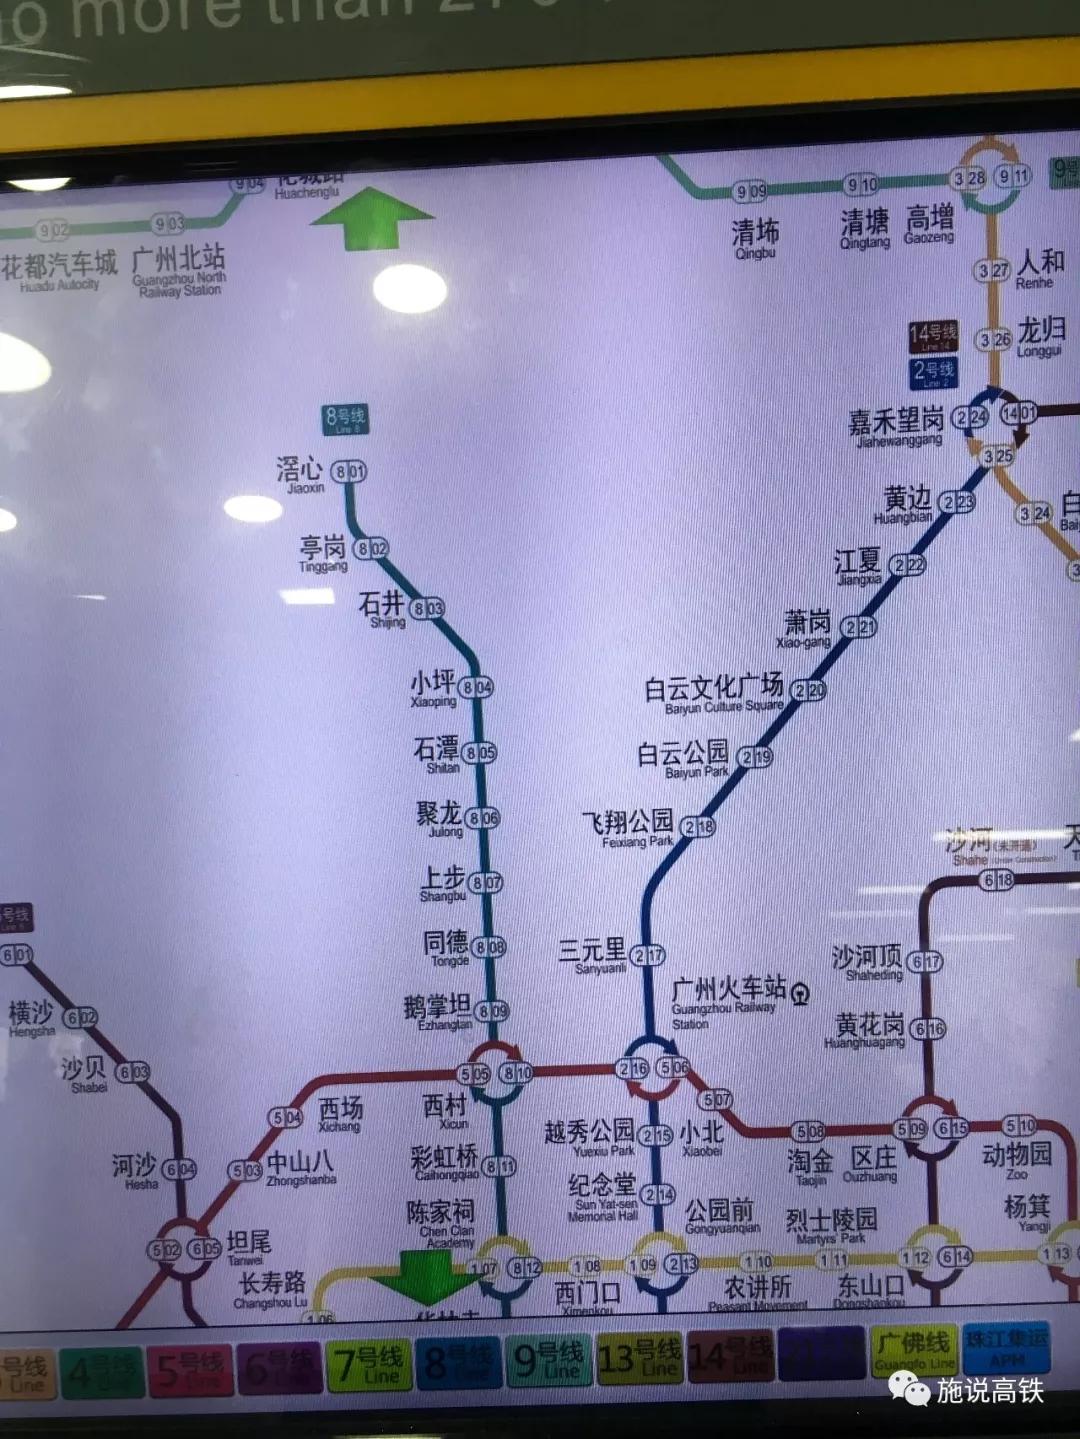 广州地铁 2019年图片